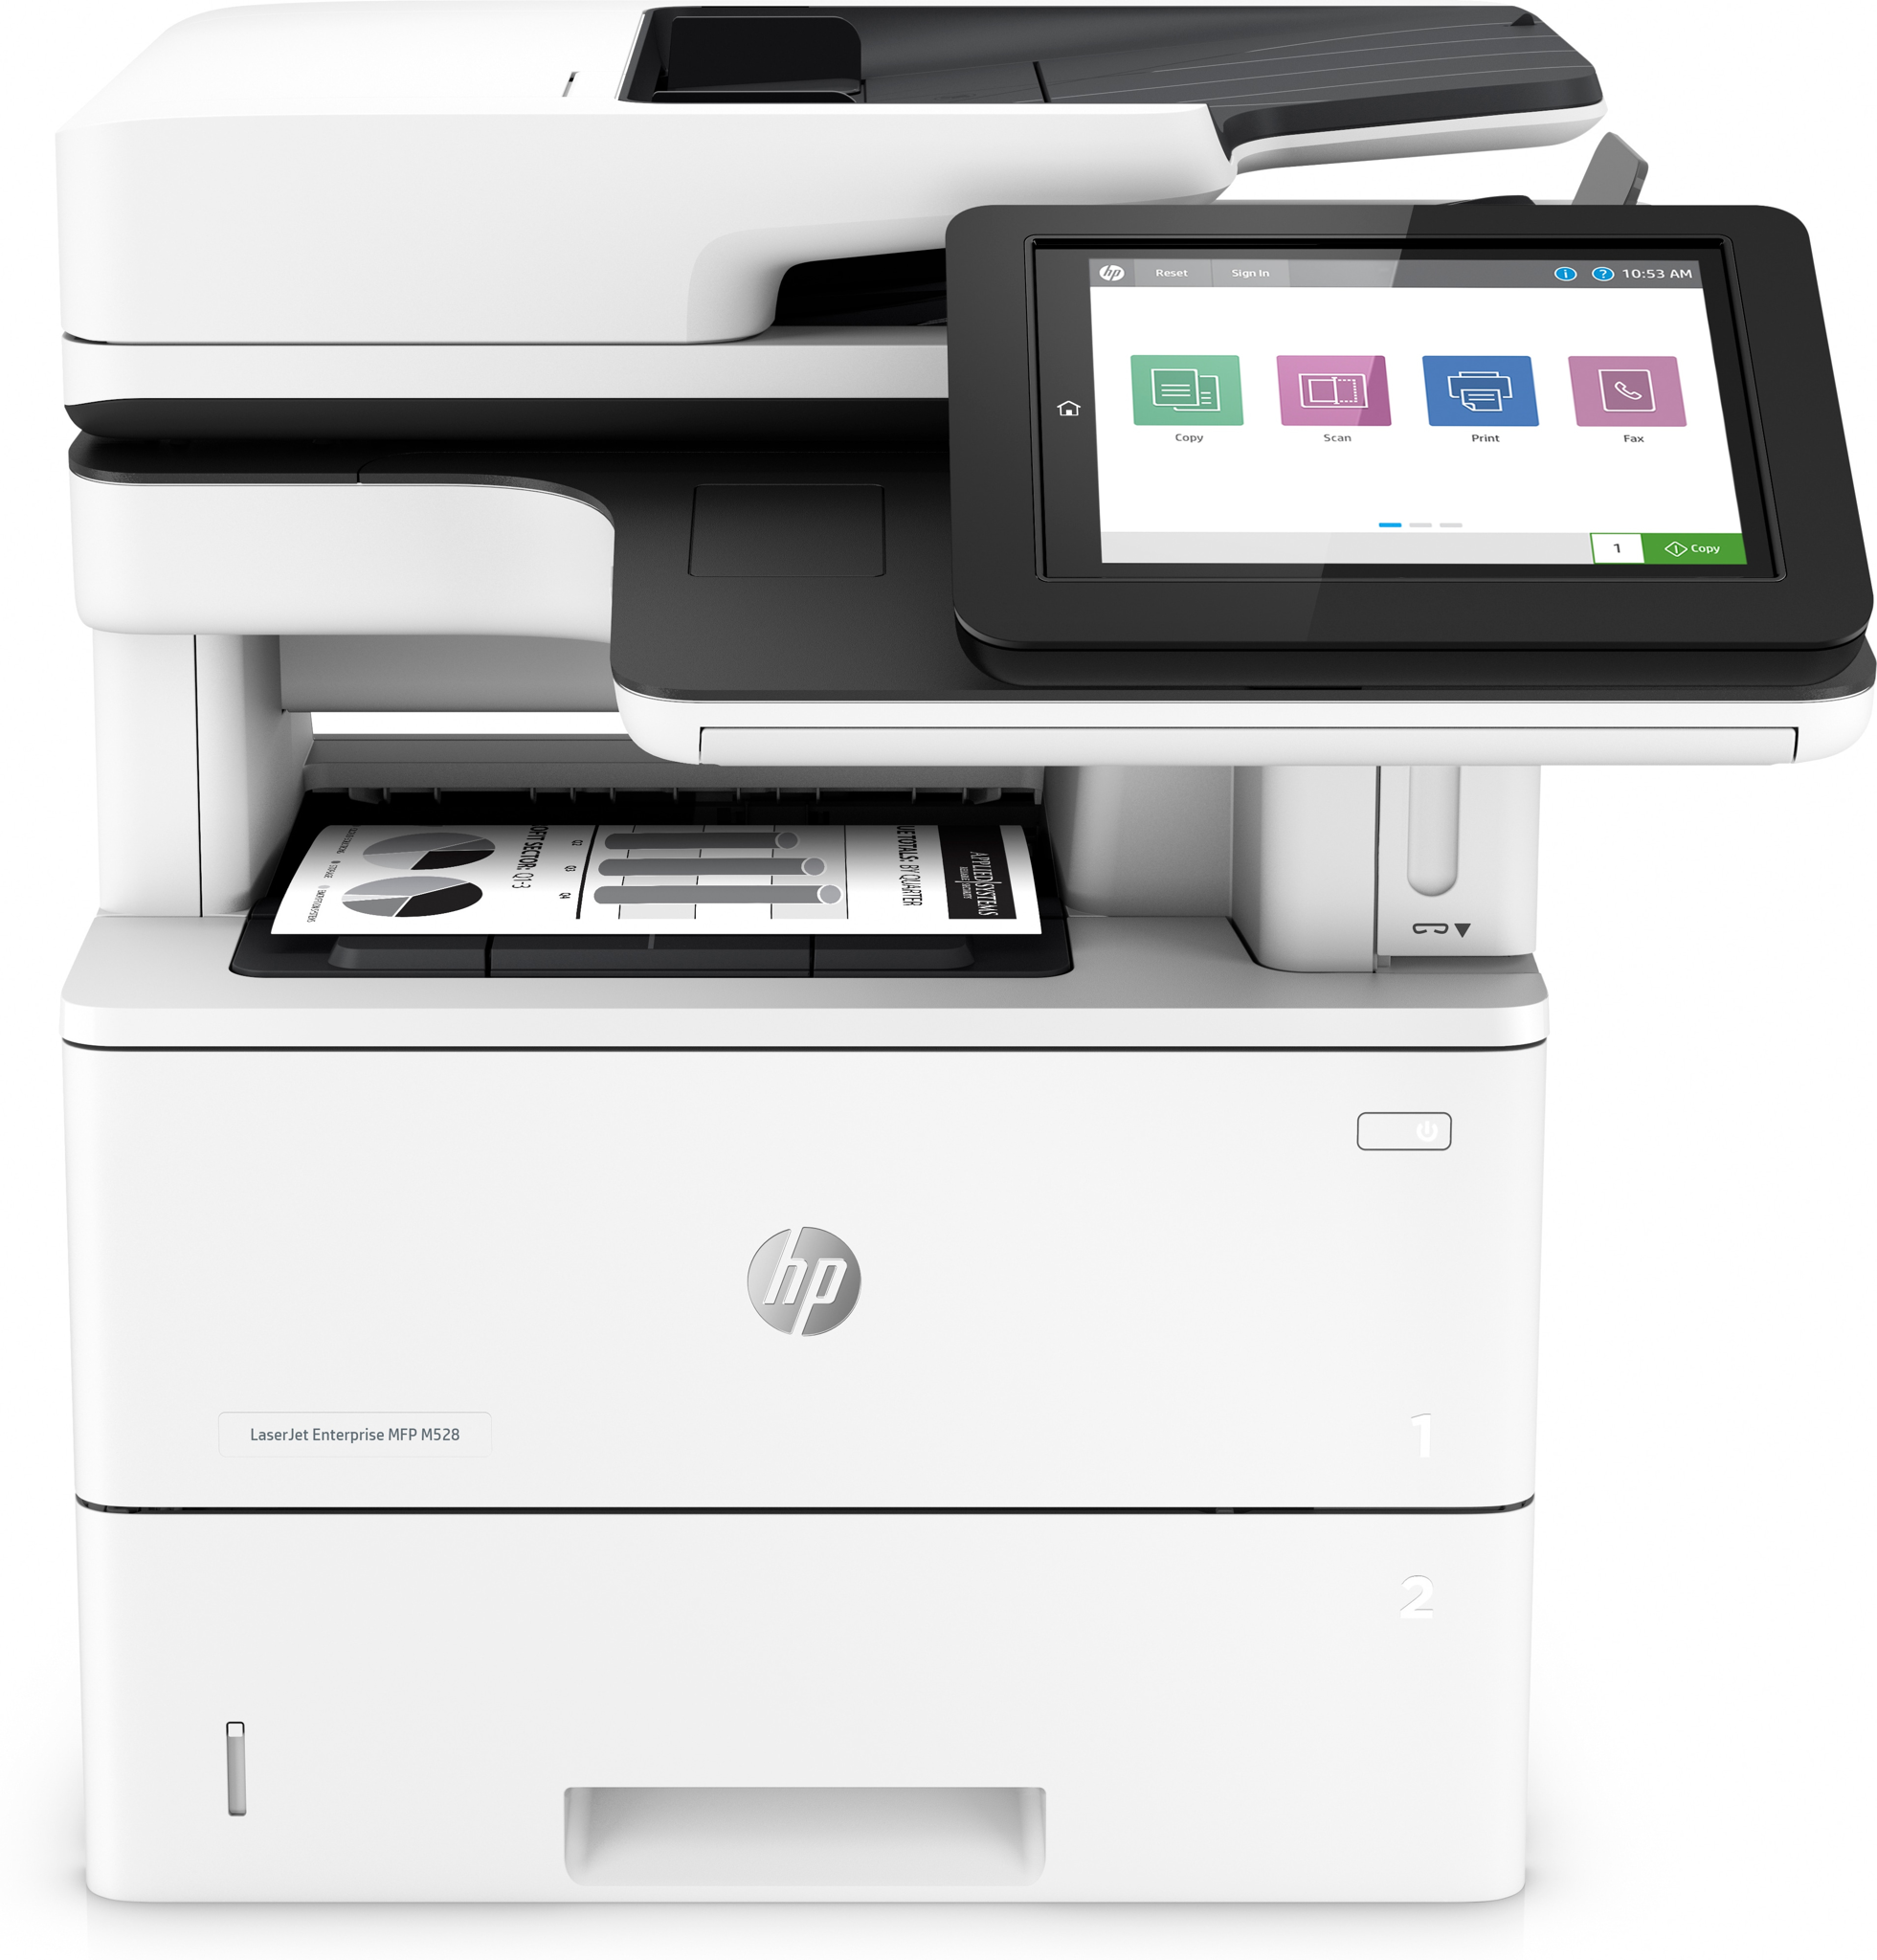 Bild von HP LaserJet Enterprise M528f MFP - Drucken - Kopieren - Scannen - Faxen - Drucken über die USB-Schnittstelle an der Vorderseite des Druckers; Scannen an E-Mail; Beidseitiger Druck; Beidseitiges Scannen - Laser - Monodruck - 1200 x 1200 DPI - A4 - Direktdruck